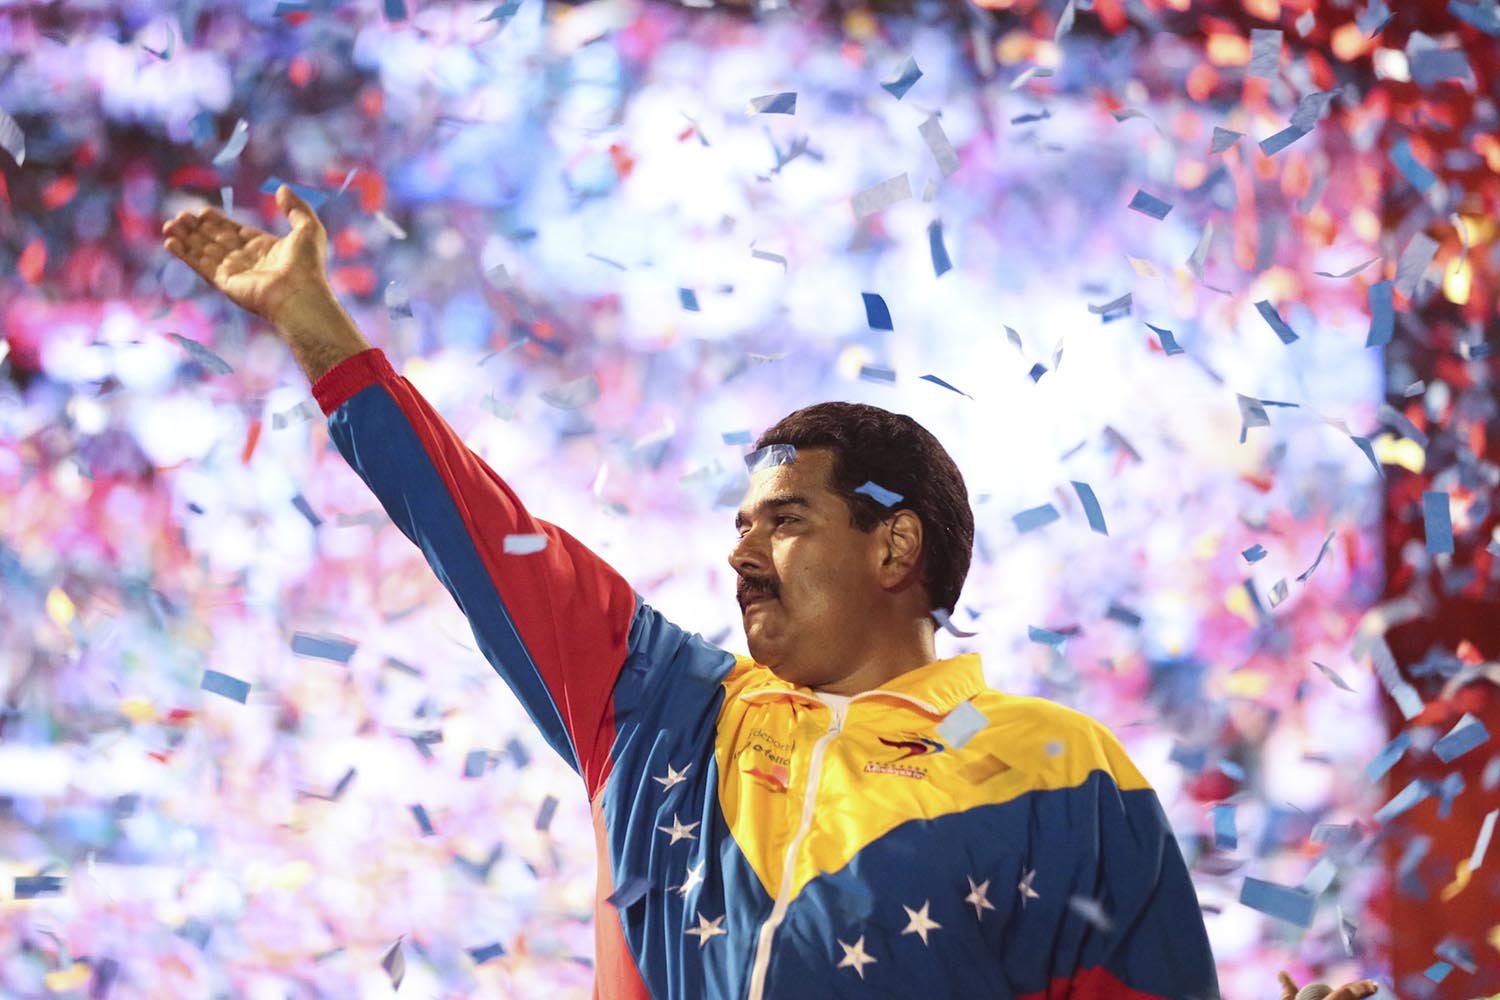 Especial Maduro. Tras la muerte de Hugo Chávez Maduro asumió la jefatura del gobierno de Venezuela